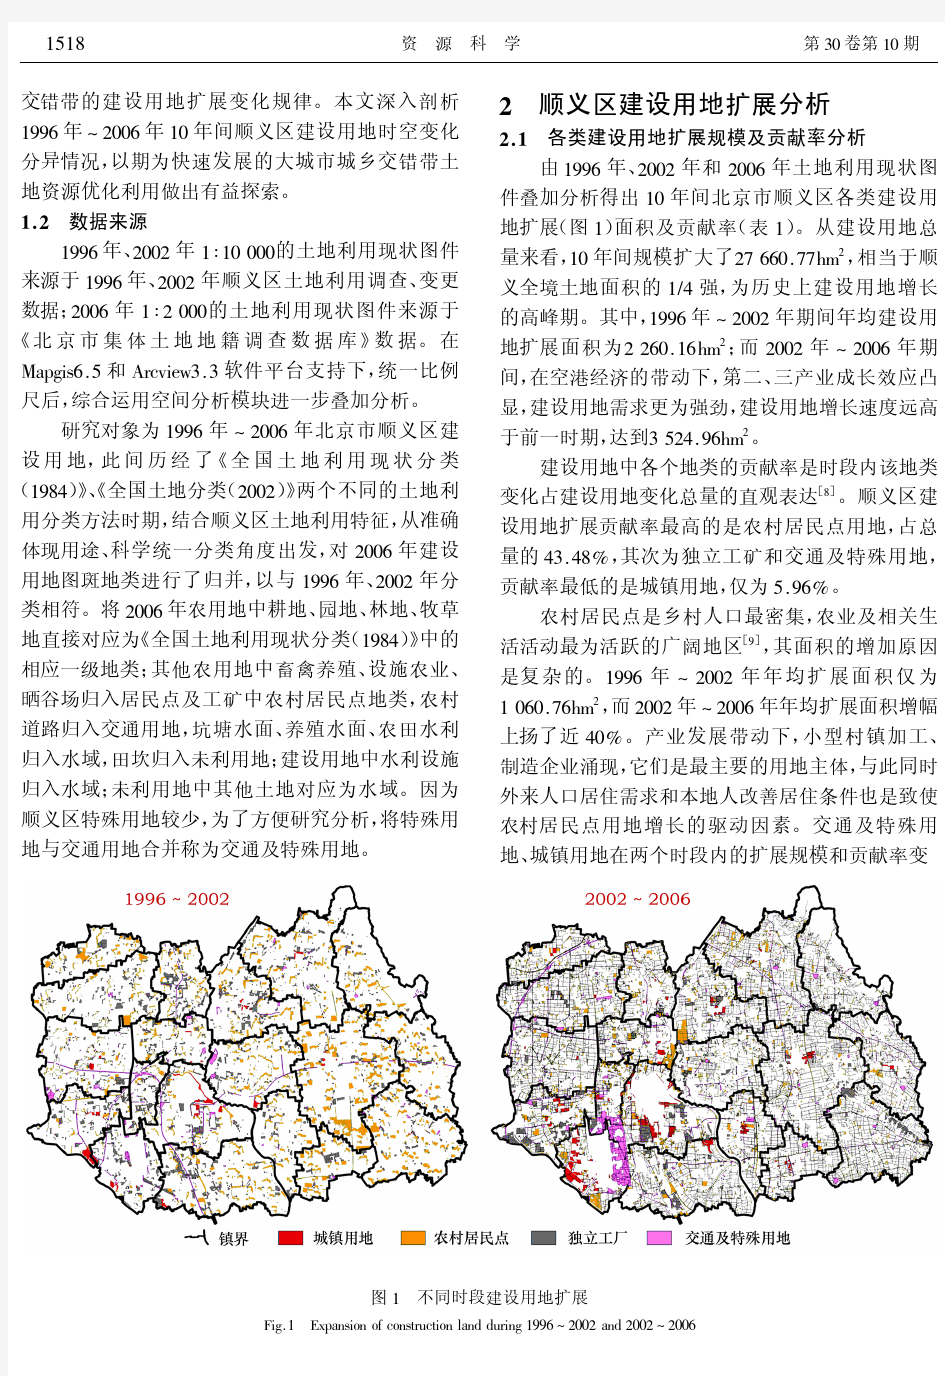 北京市顺义区建设用地扩展的空间分异 20081012